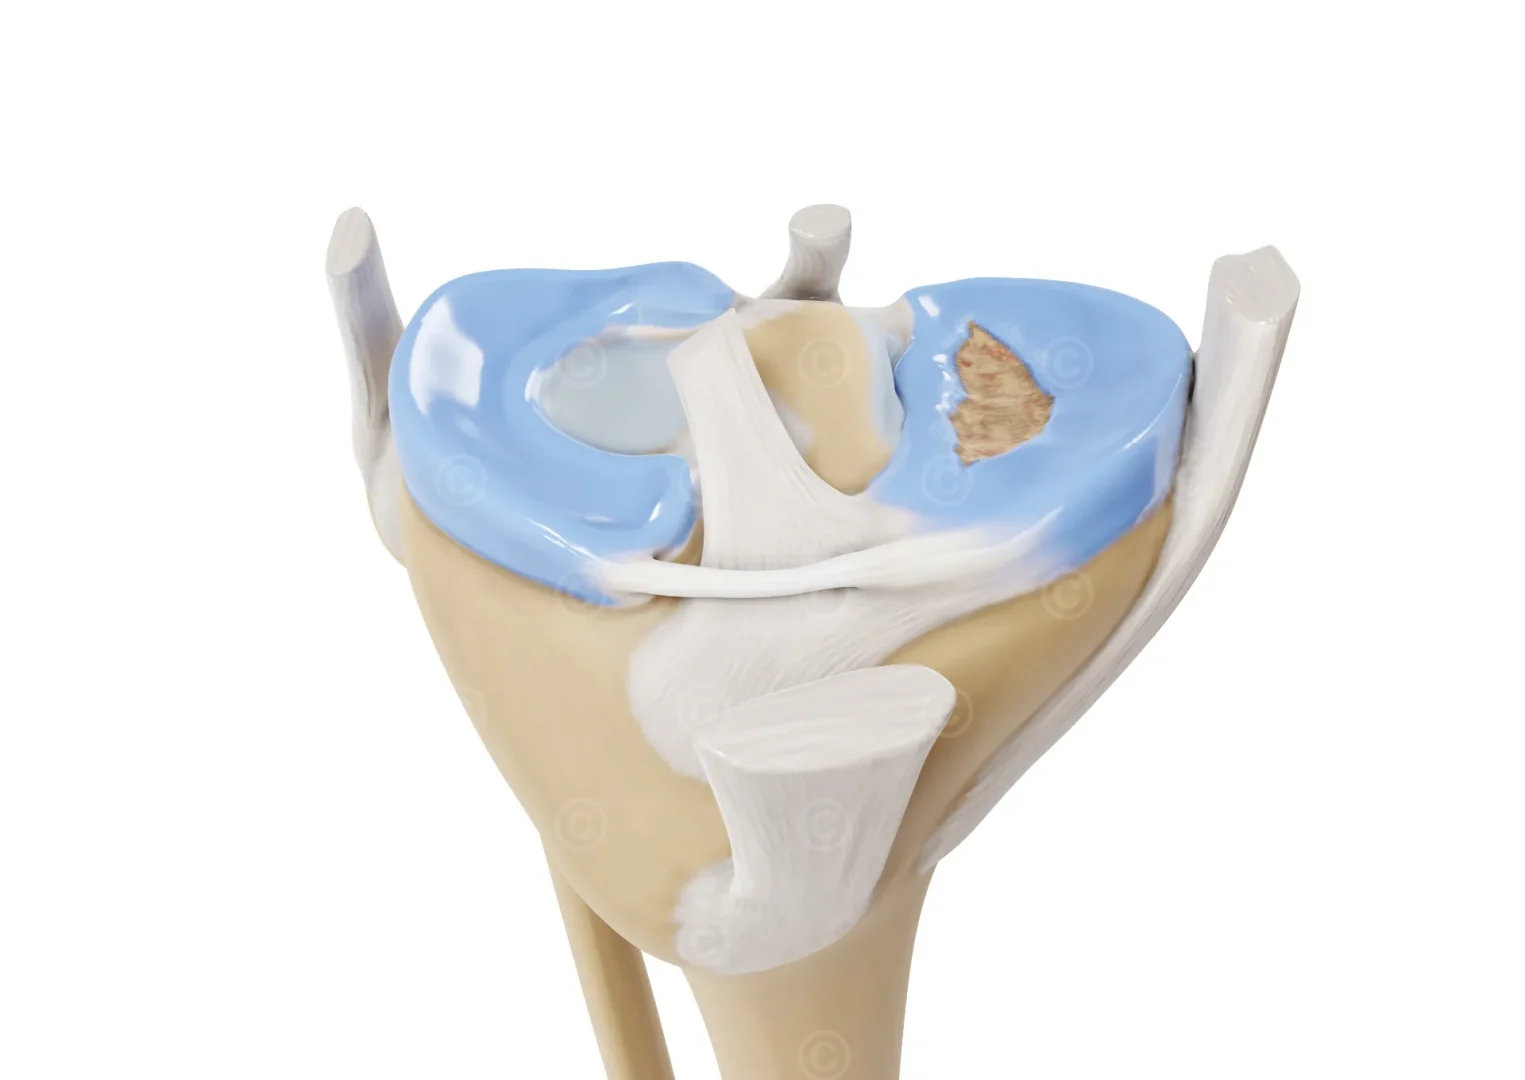 bucket-handle-tear-meniscus-front